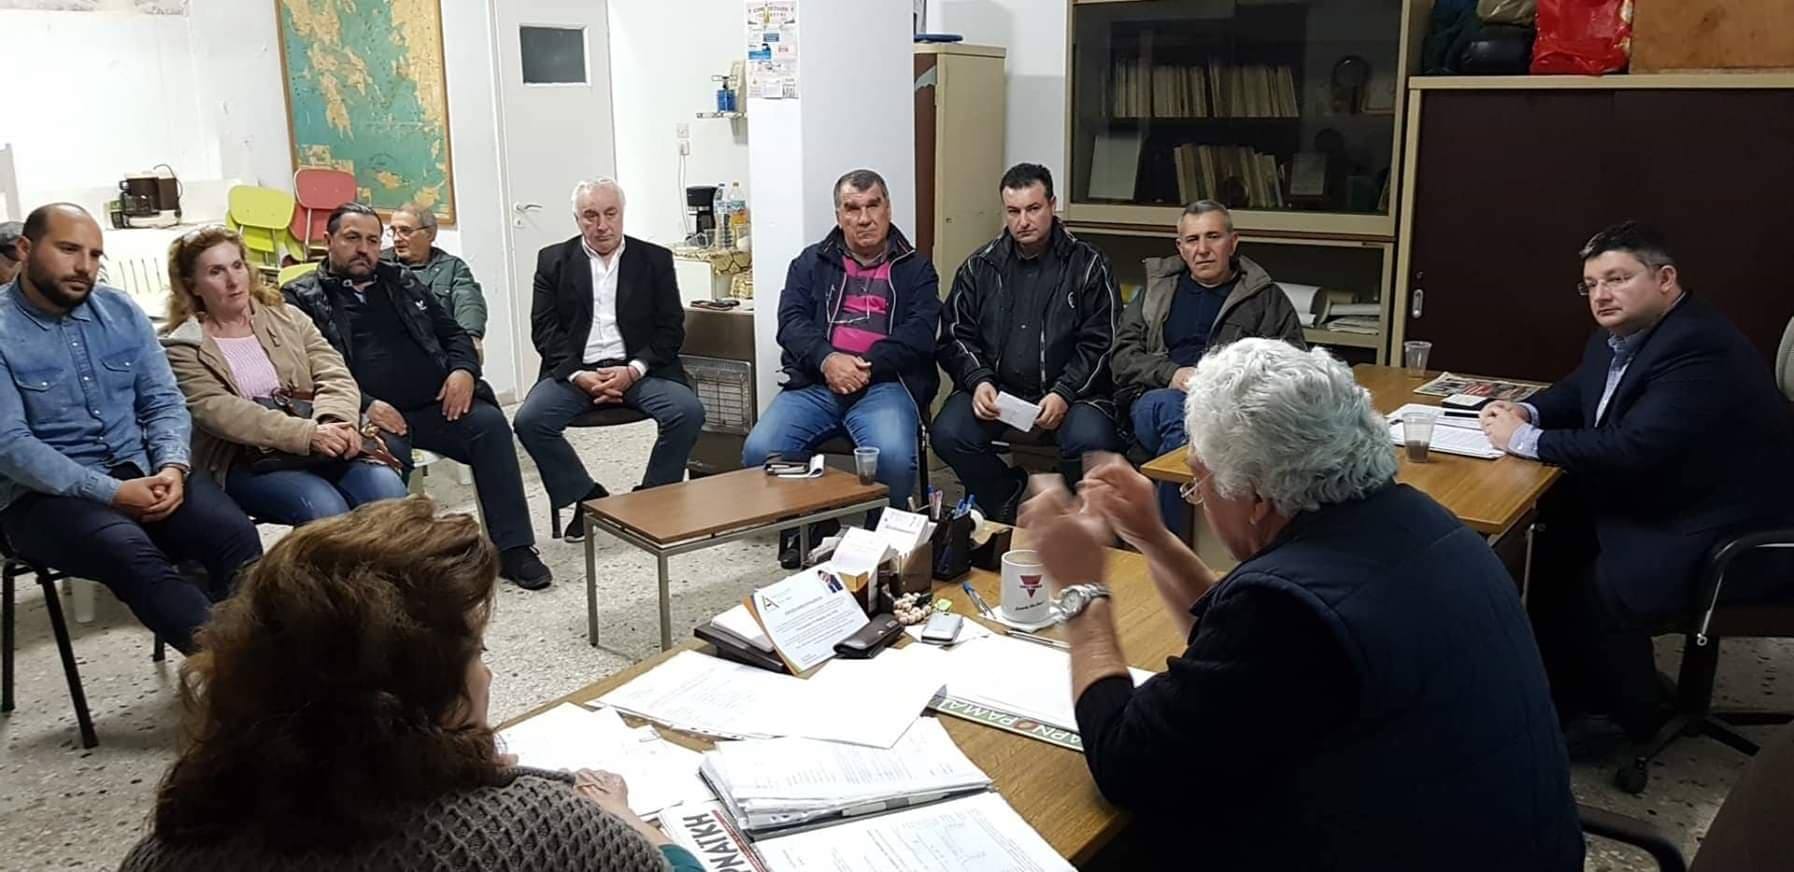 Επίσκεψη στα γραφεία του Συλλόγου Χαραυγής από τον Υποψήφιο Δήμαρχο Σπύρο Βρεττό και τους συνεργάτες του